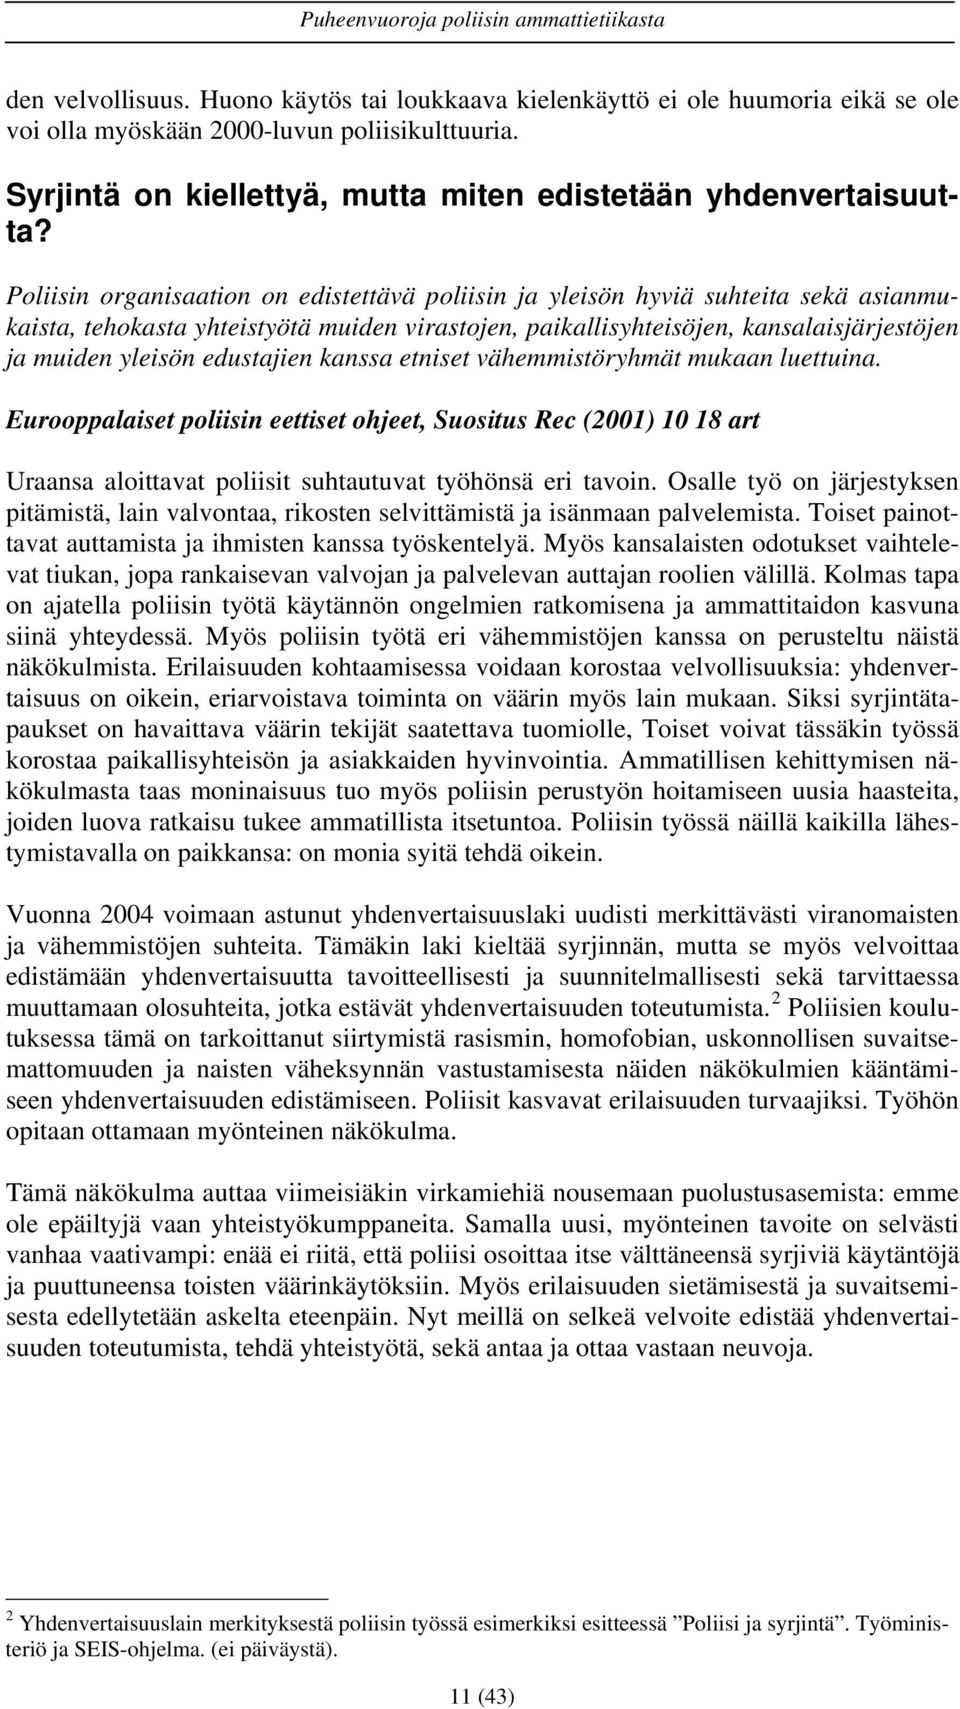 edustajien kanssa etniset vähemmistöryhmät mukaan luettuina. Eurooppalaiset poliisin eettiset ohjeet, Suositus Rec (2001) 10 18 art Uraansa aloittavat poliisit suhtautuvat työhönsä eri tavoin.